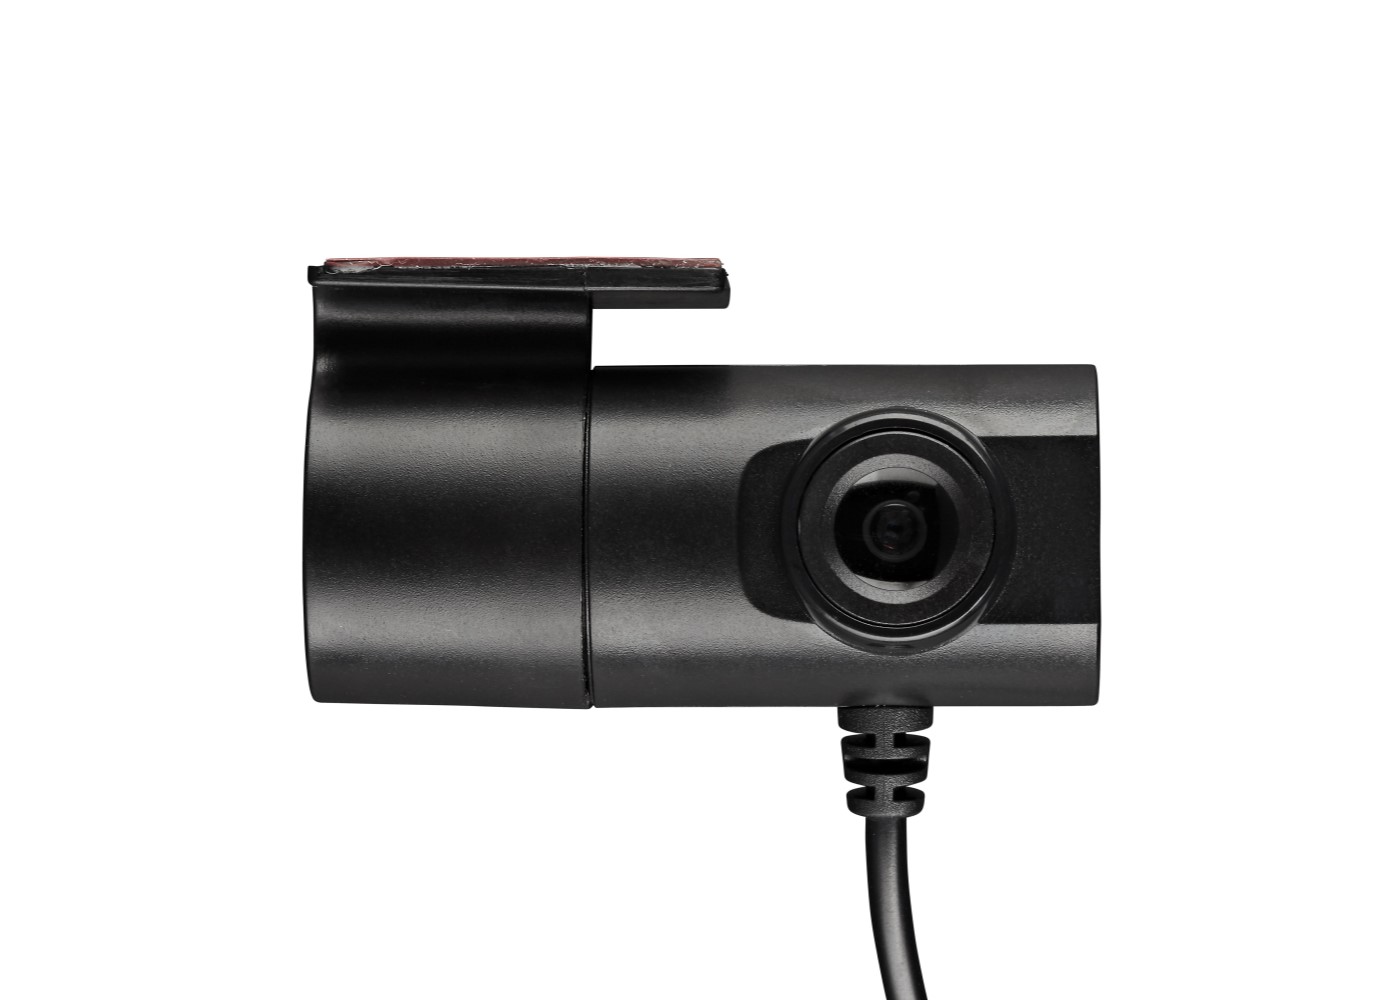 Ring Trade Pro2 Dash Camera